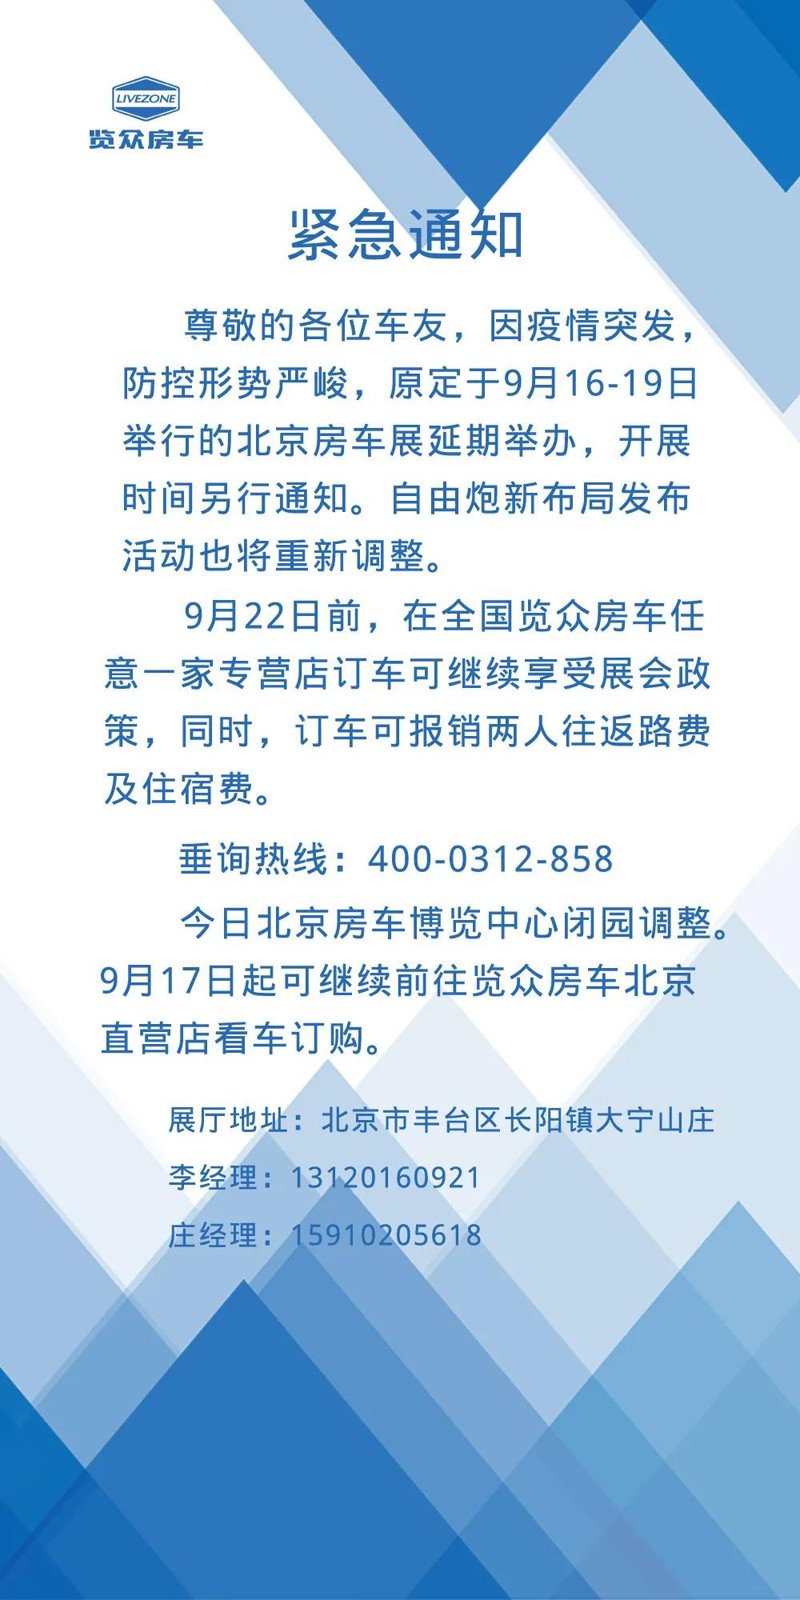 关于北京房车展展会延期的通知